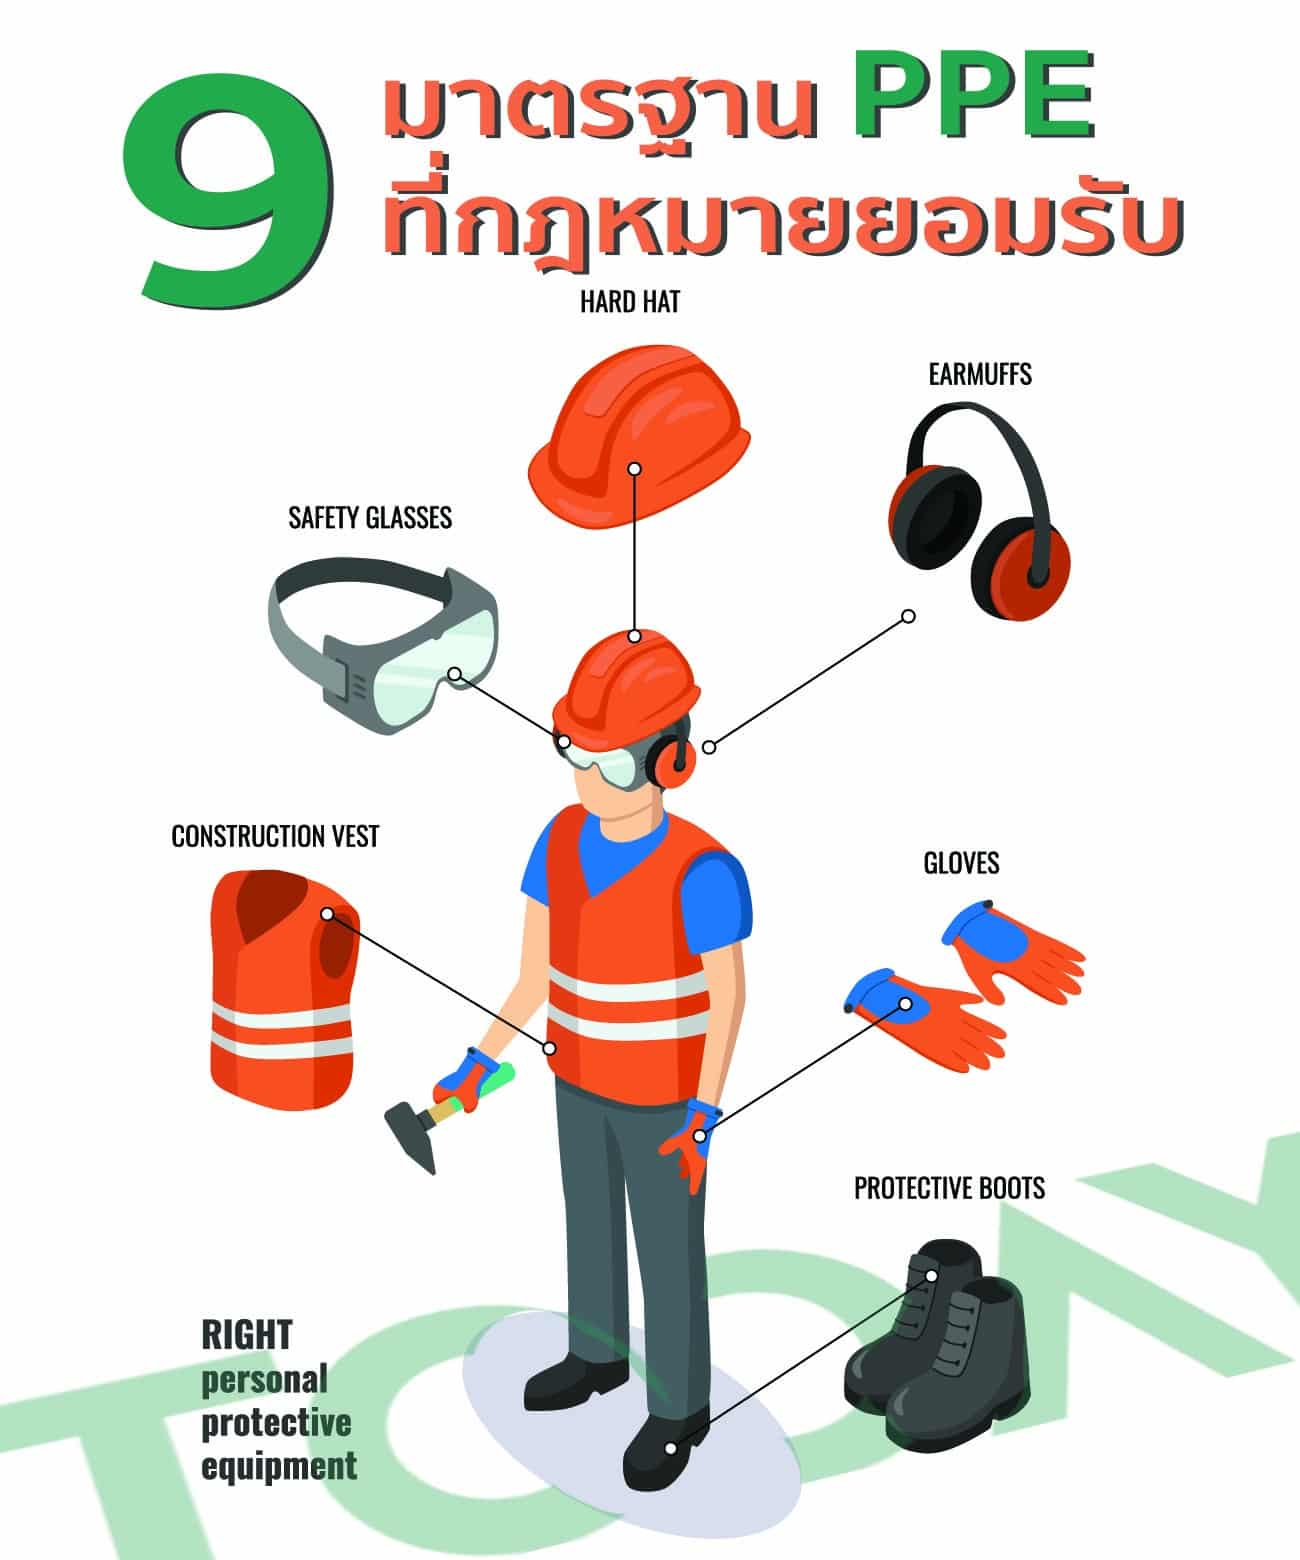 9 PPE มาตรฐานสากล